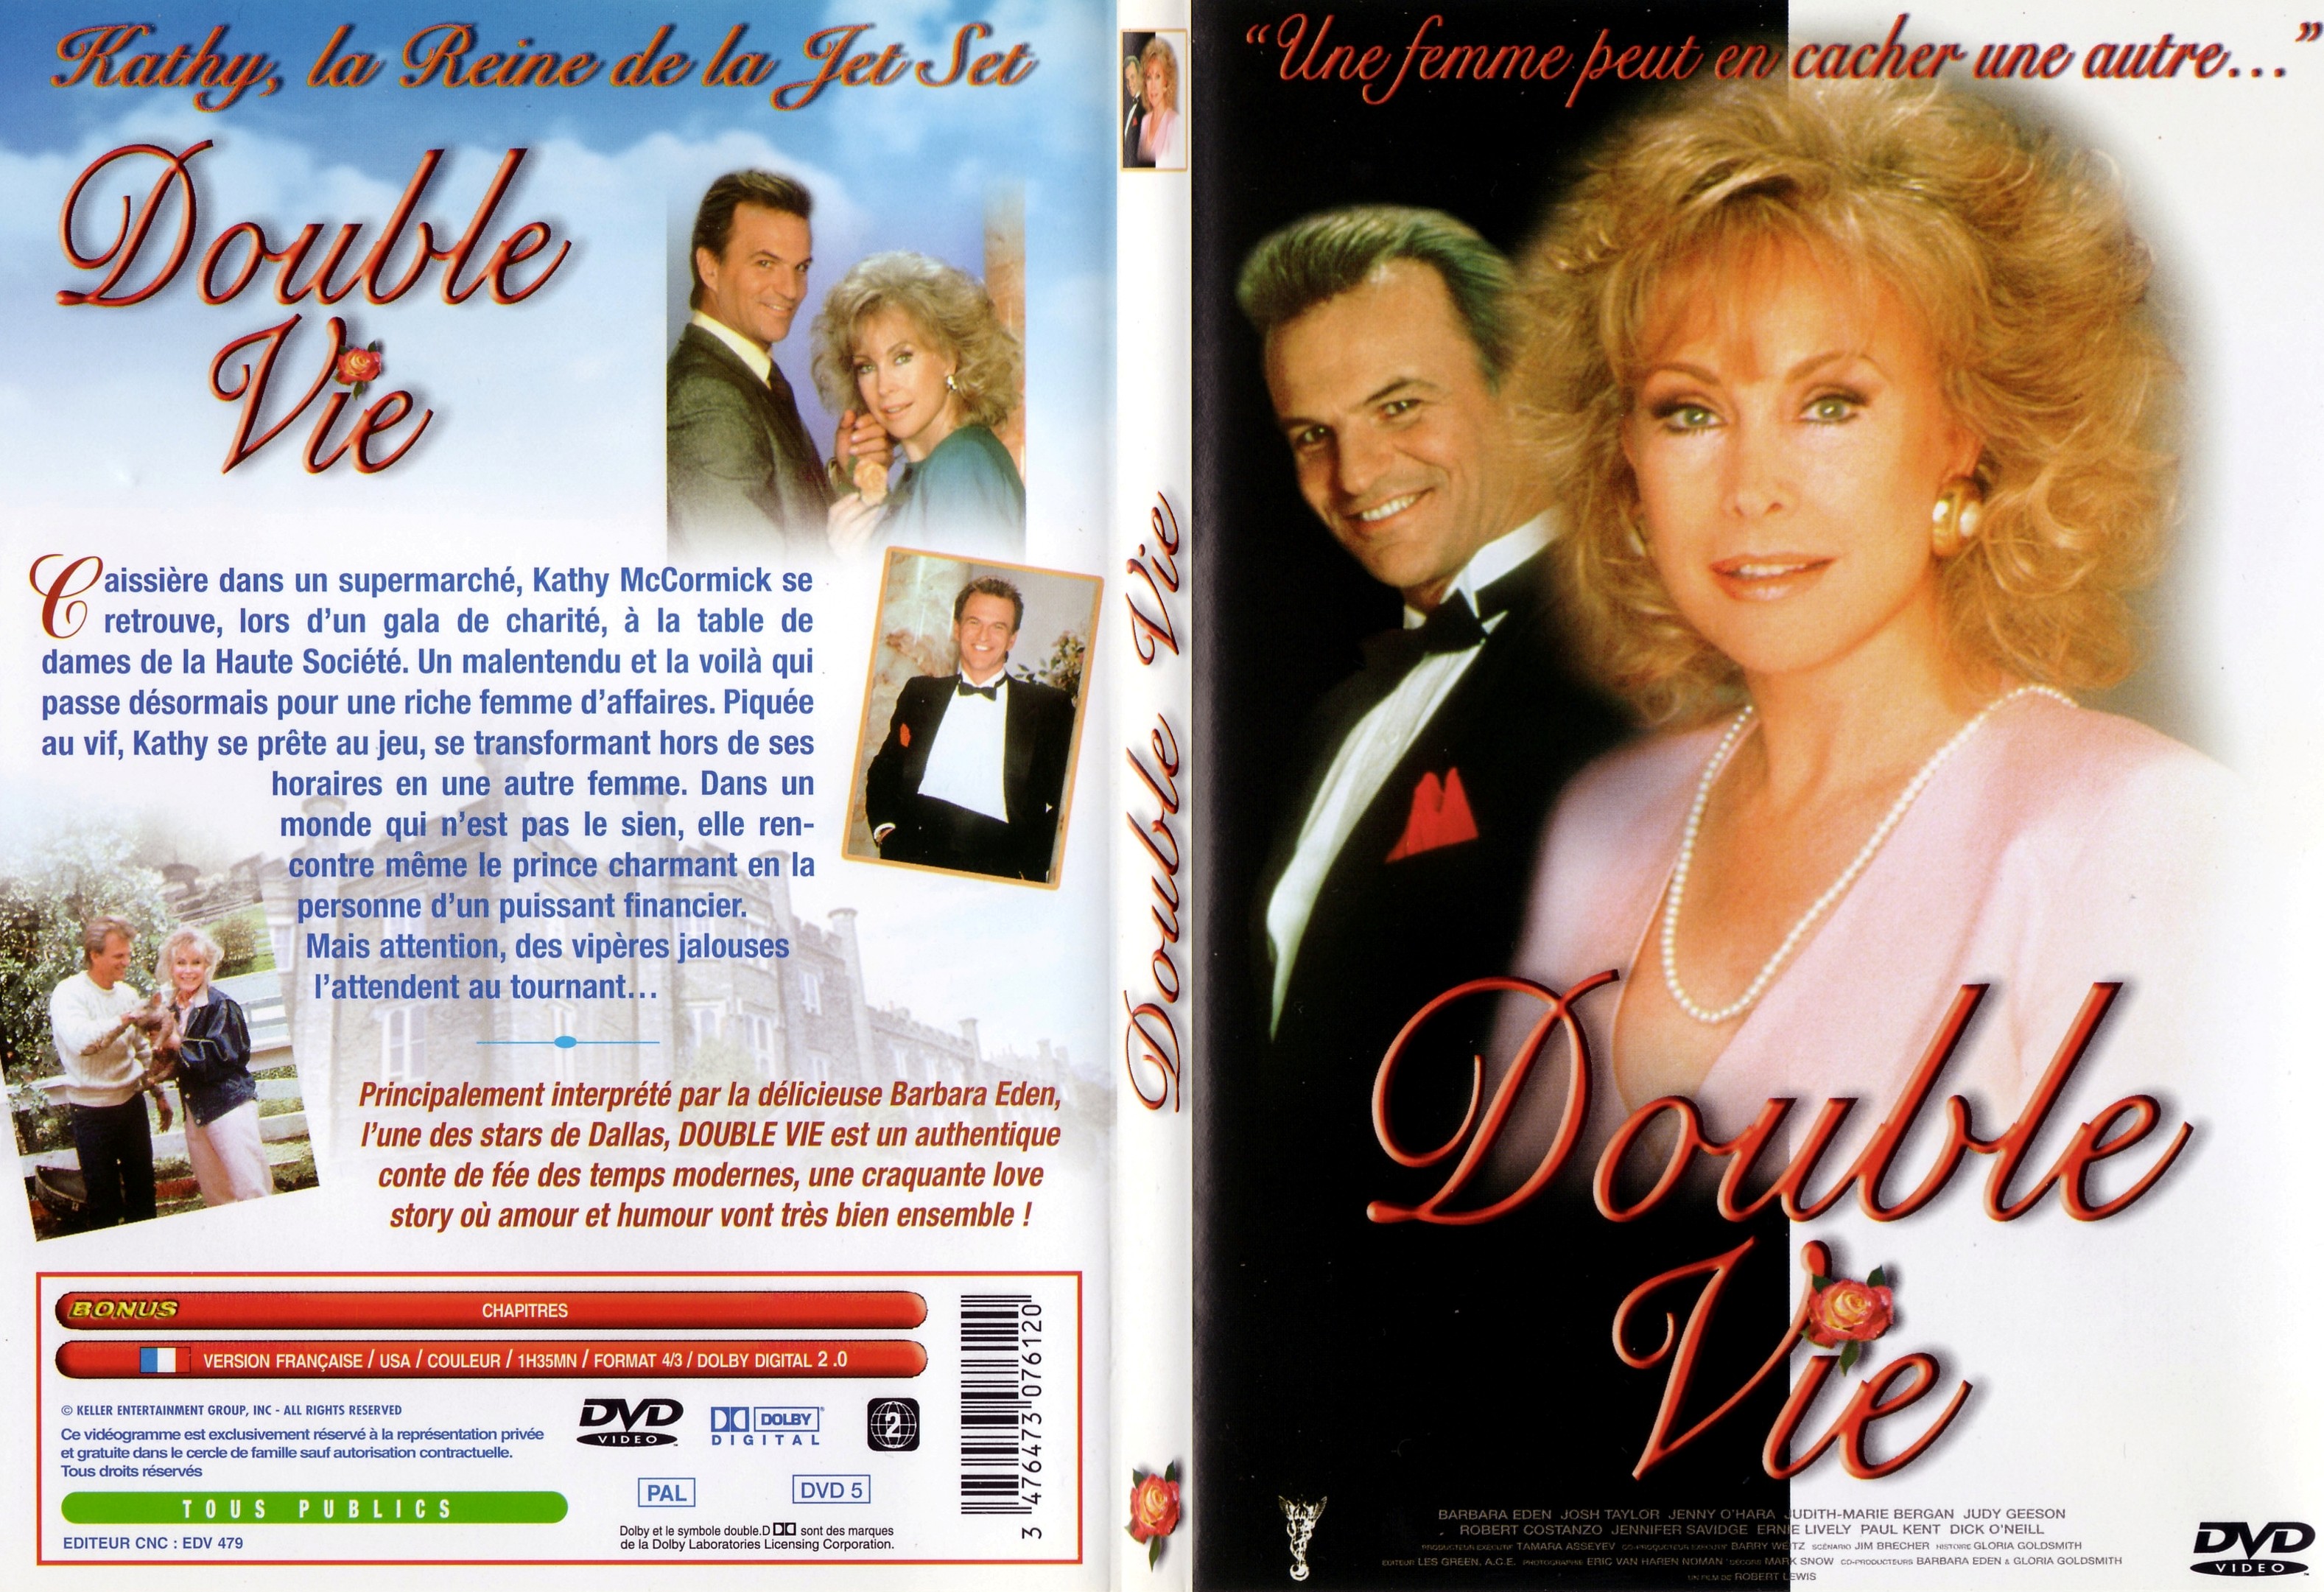 Jaquette DVD Double vie - SLIM